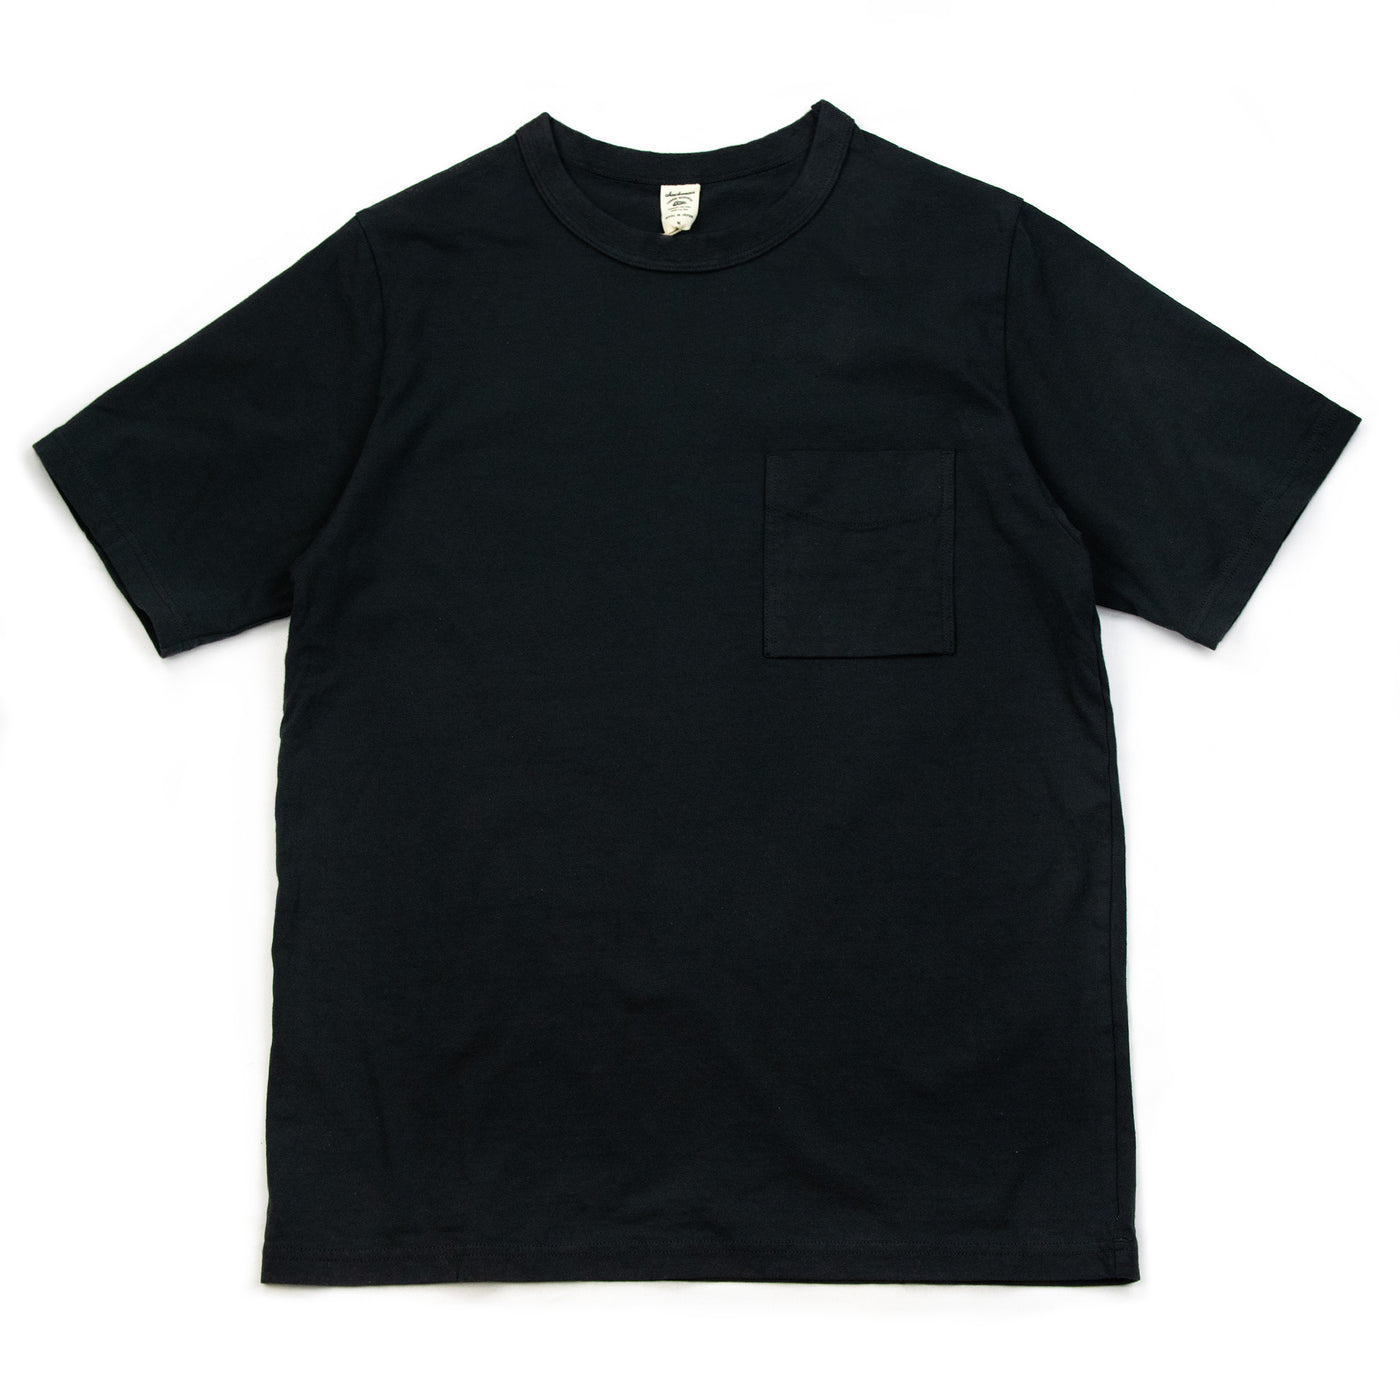 Jackman Pocket T-Shirt Ink Black Front